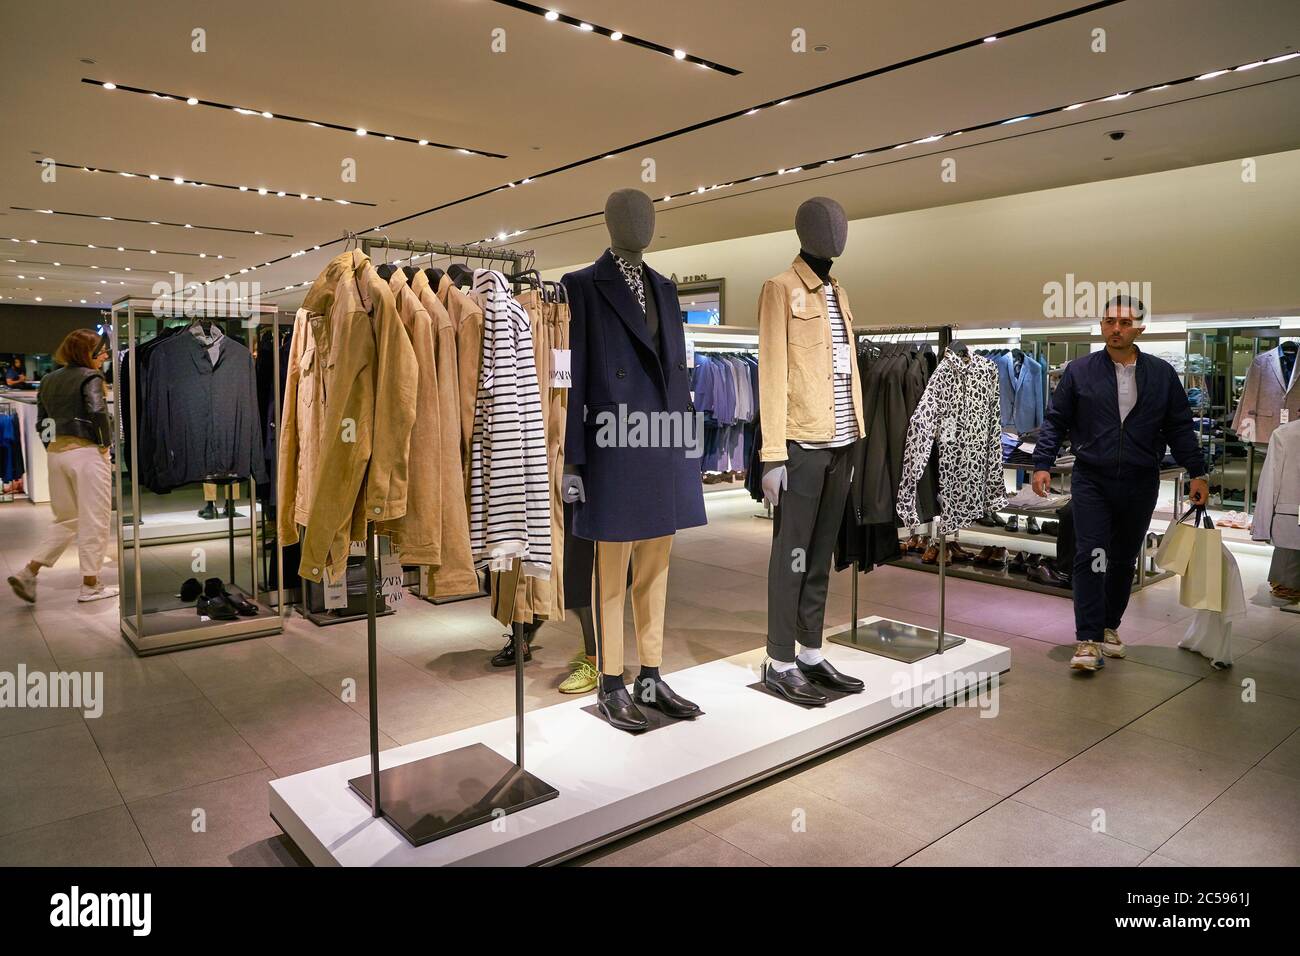 BERLIN, DEUTSCHLAND - CA. SEPTEMBER 2019: Innenaufnahme des Zara-Stores in  Berlin Stockfotografie - Alamy